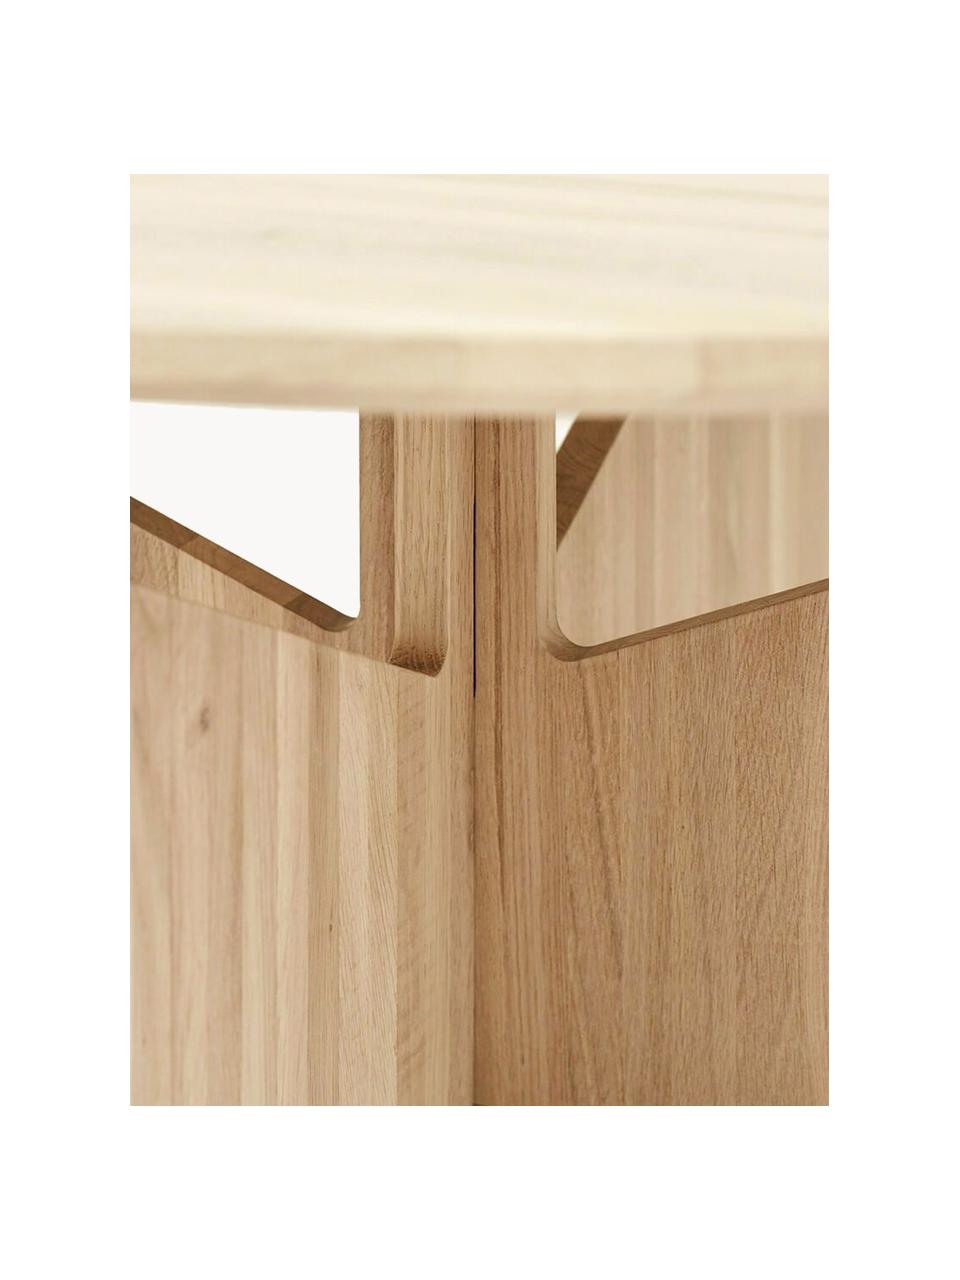 Runder Couchtisch Future aus Eichenholz, Massives Eichenholz

Dieses Produkt wird aus nachhaltig gewonnenem, FSC®-zertifiziertem Holz gefertigt., Eichenholz, Ø 78 cm